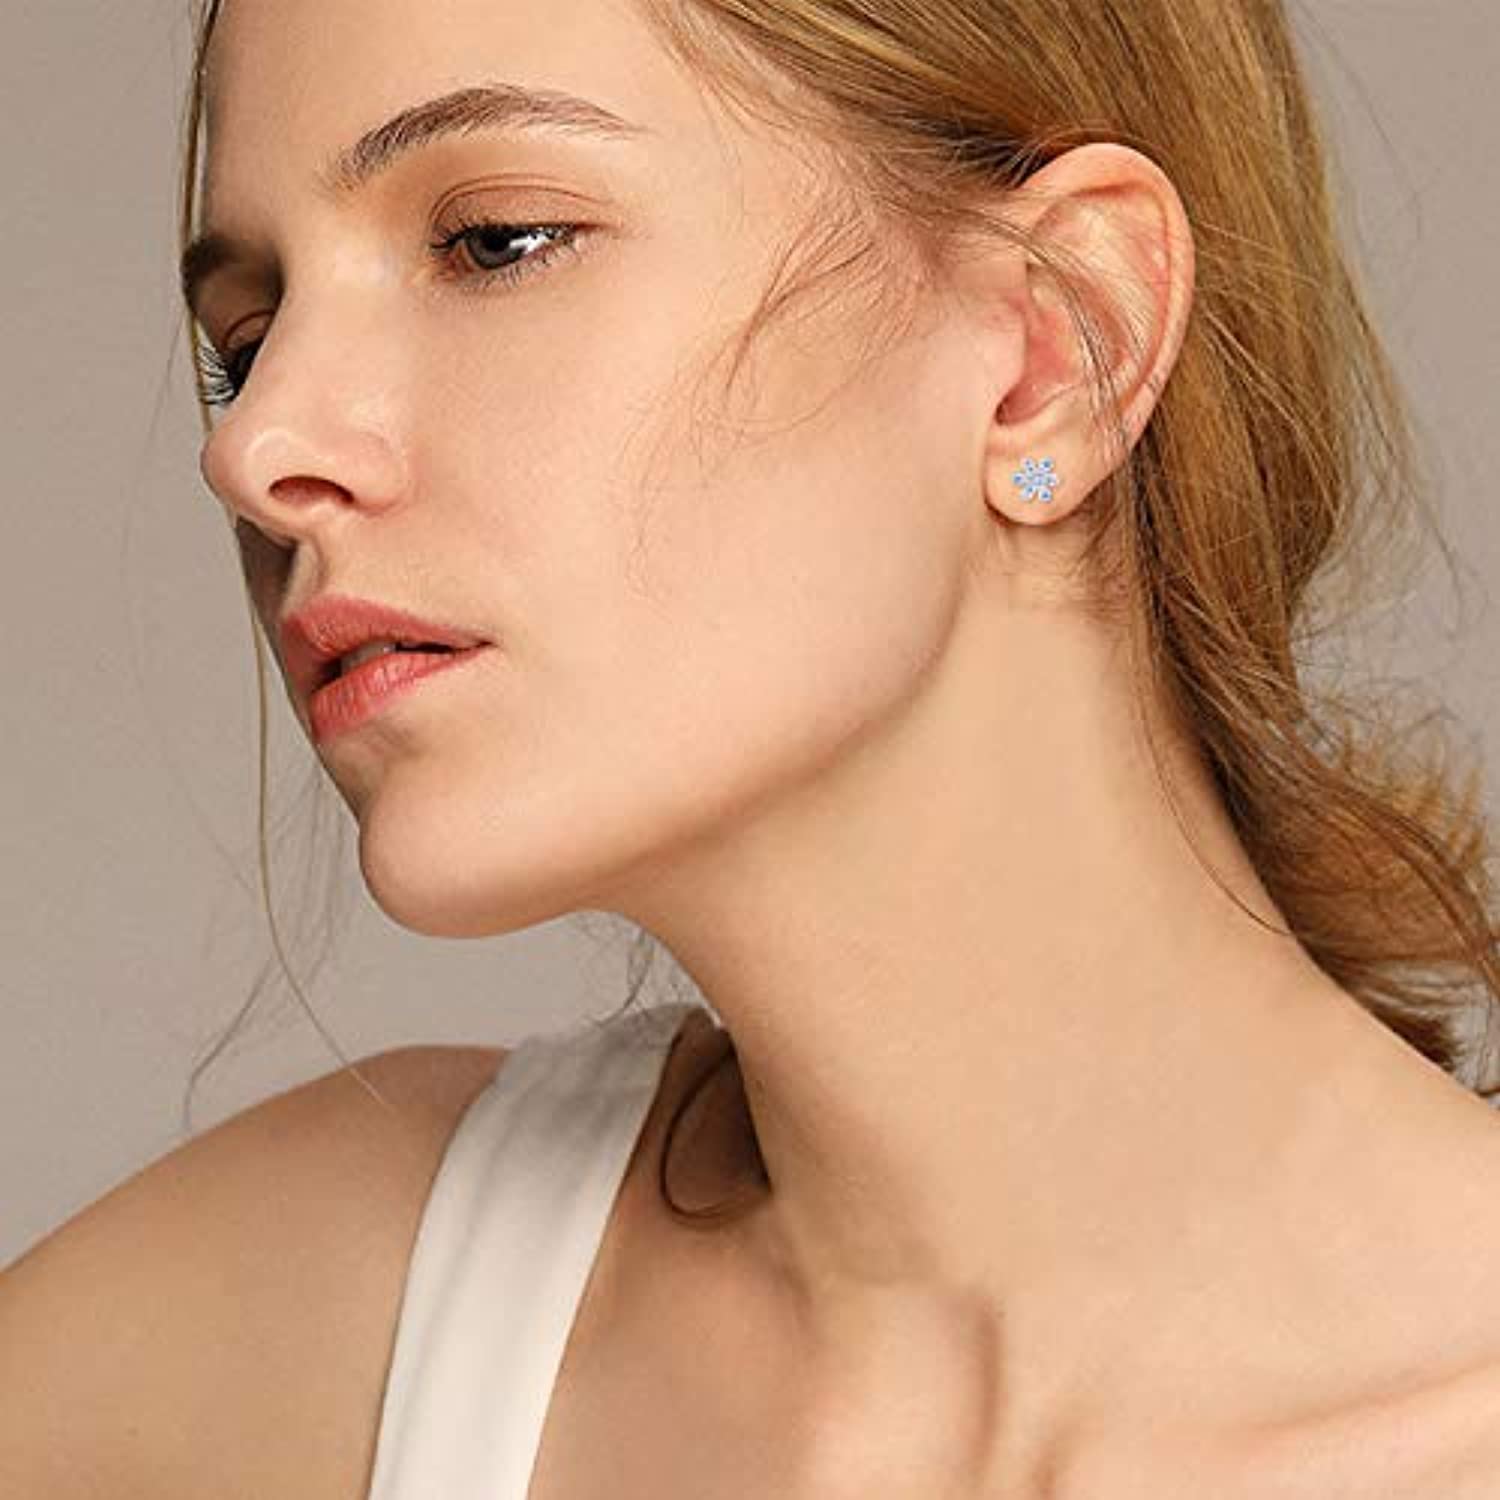 Sterling Silver Daisy Stud Earrings For Women Girls Hypoallergenic Cubic Zircoina Flowers Earrings